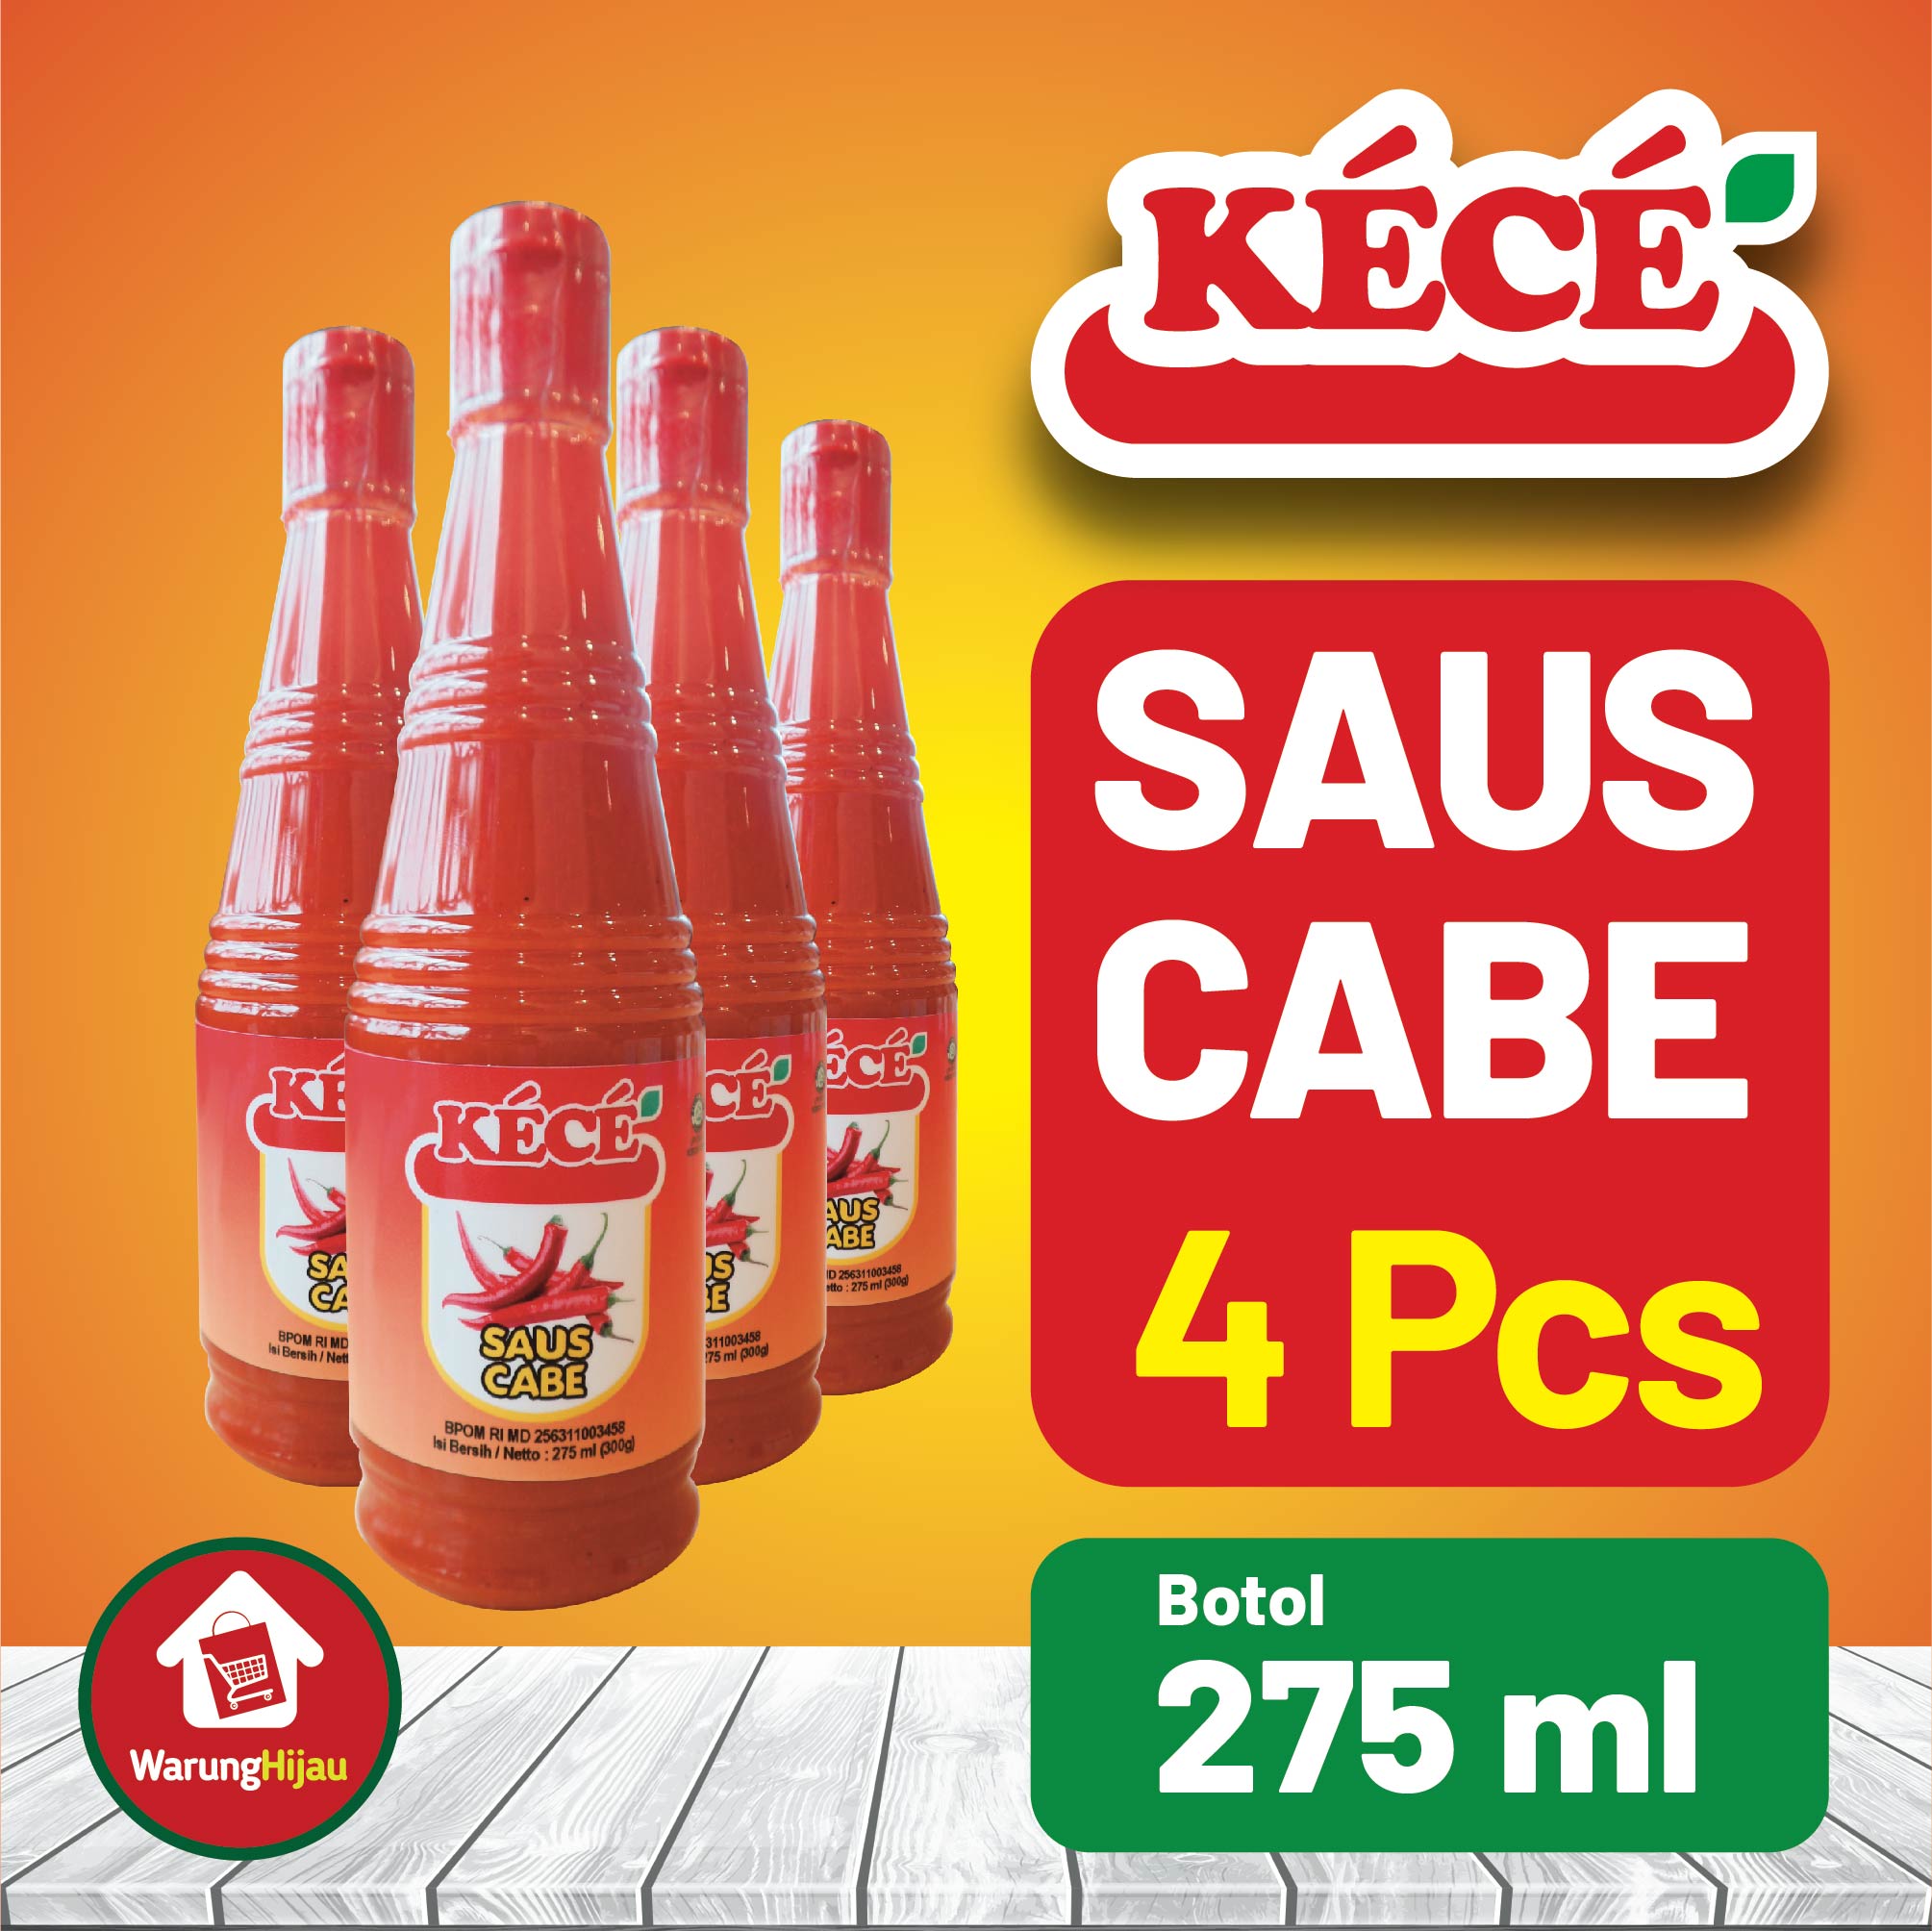 Saus Cabe KECE Botol 275ml 4 Pcs + Diskon